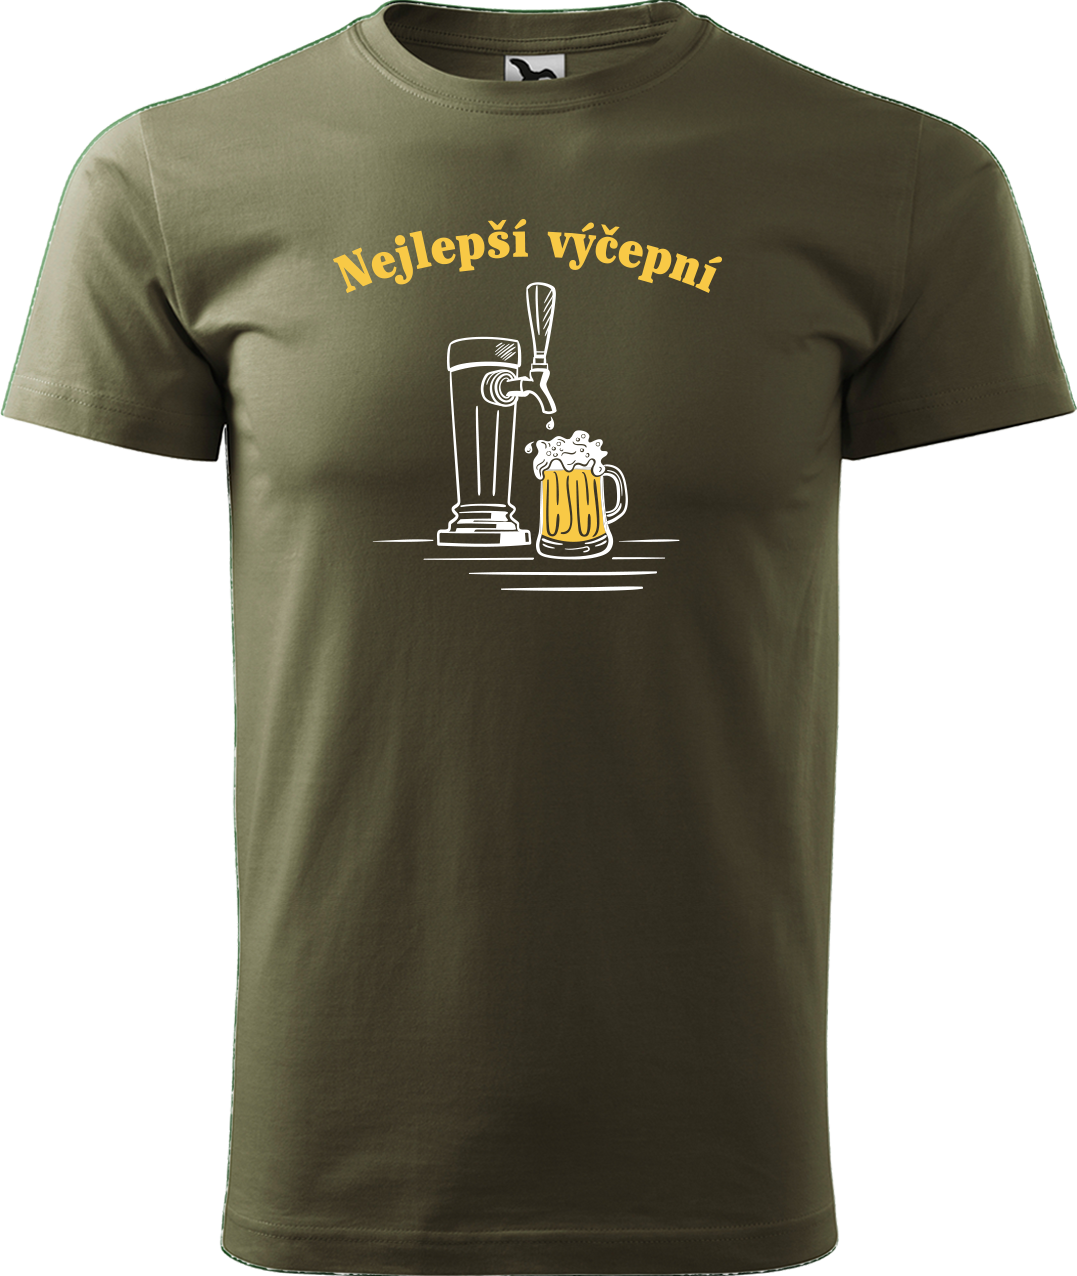 Pivní tričko - Nejlepší hospodskej Velikost: XL, Barva: Military (69)